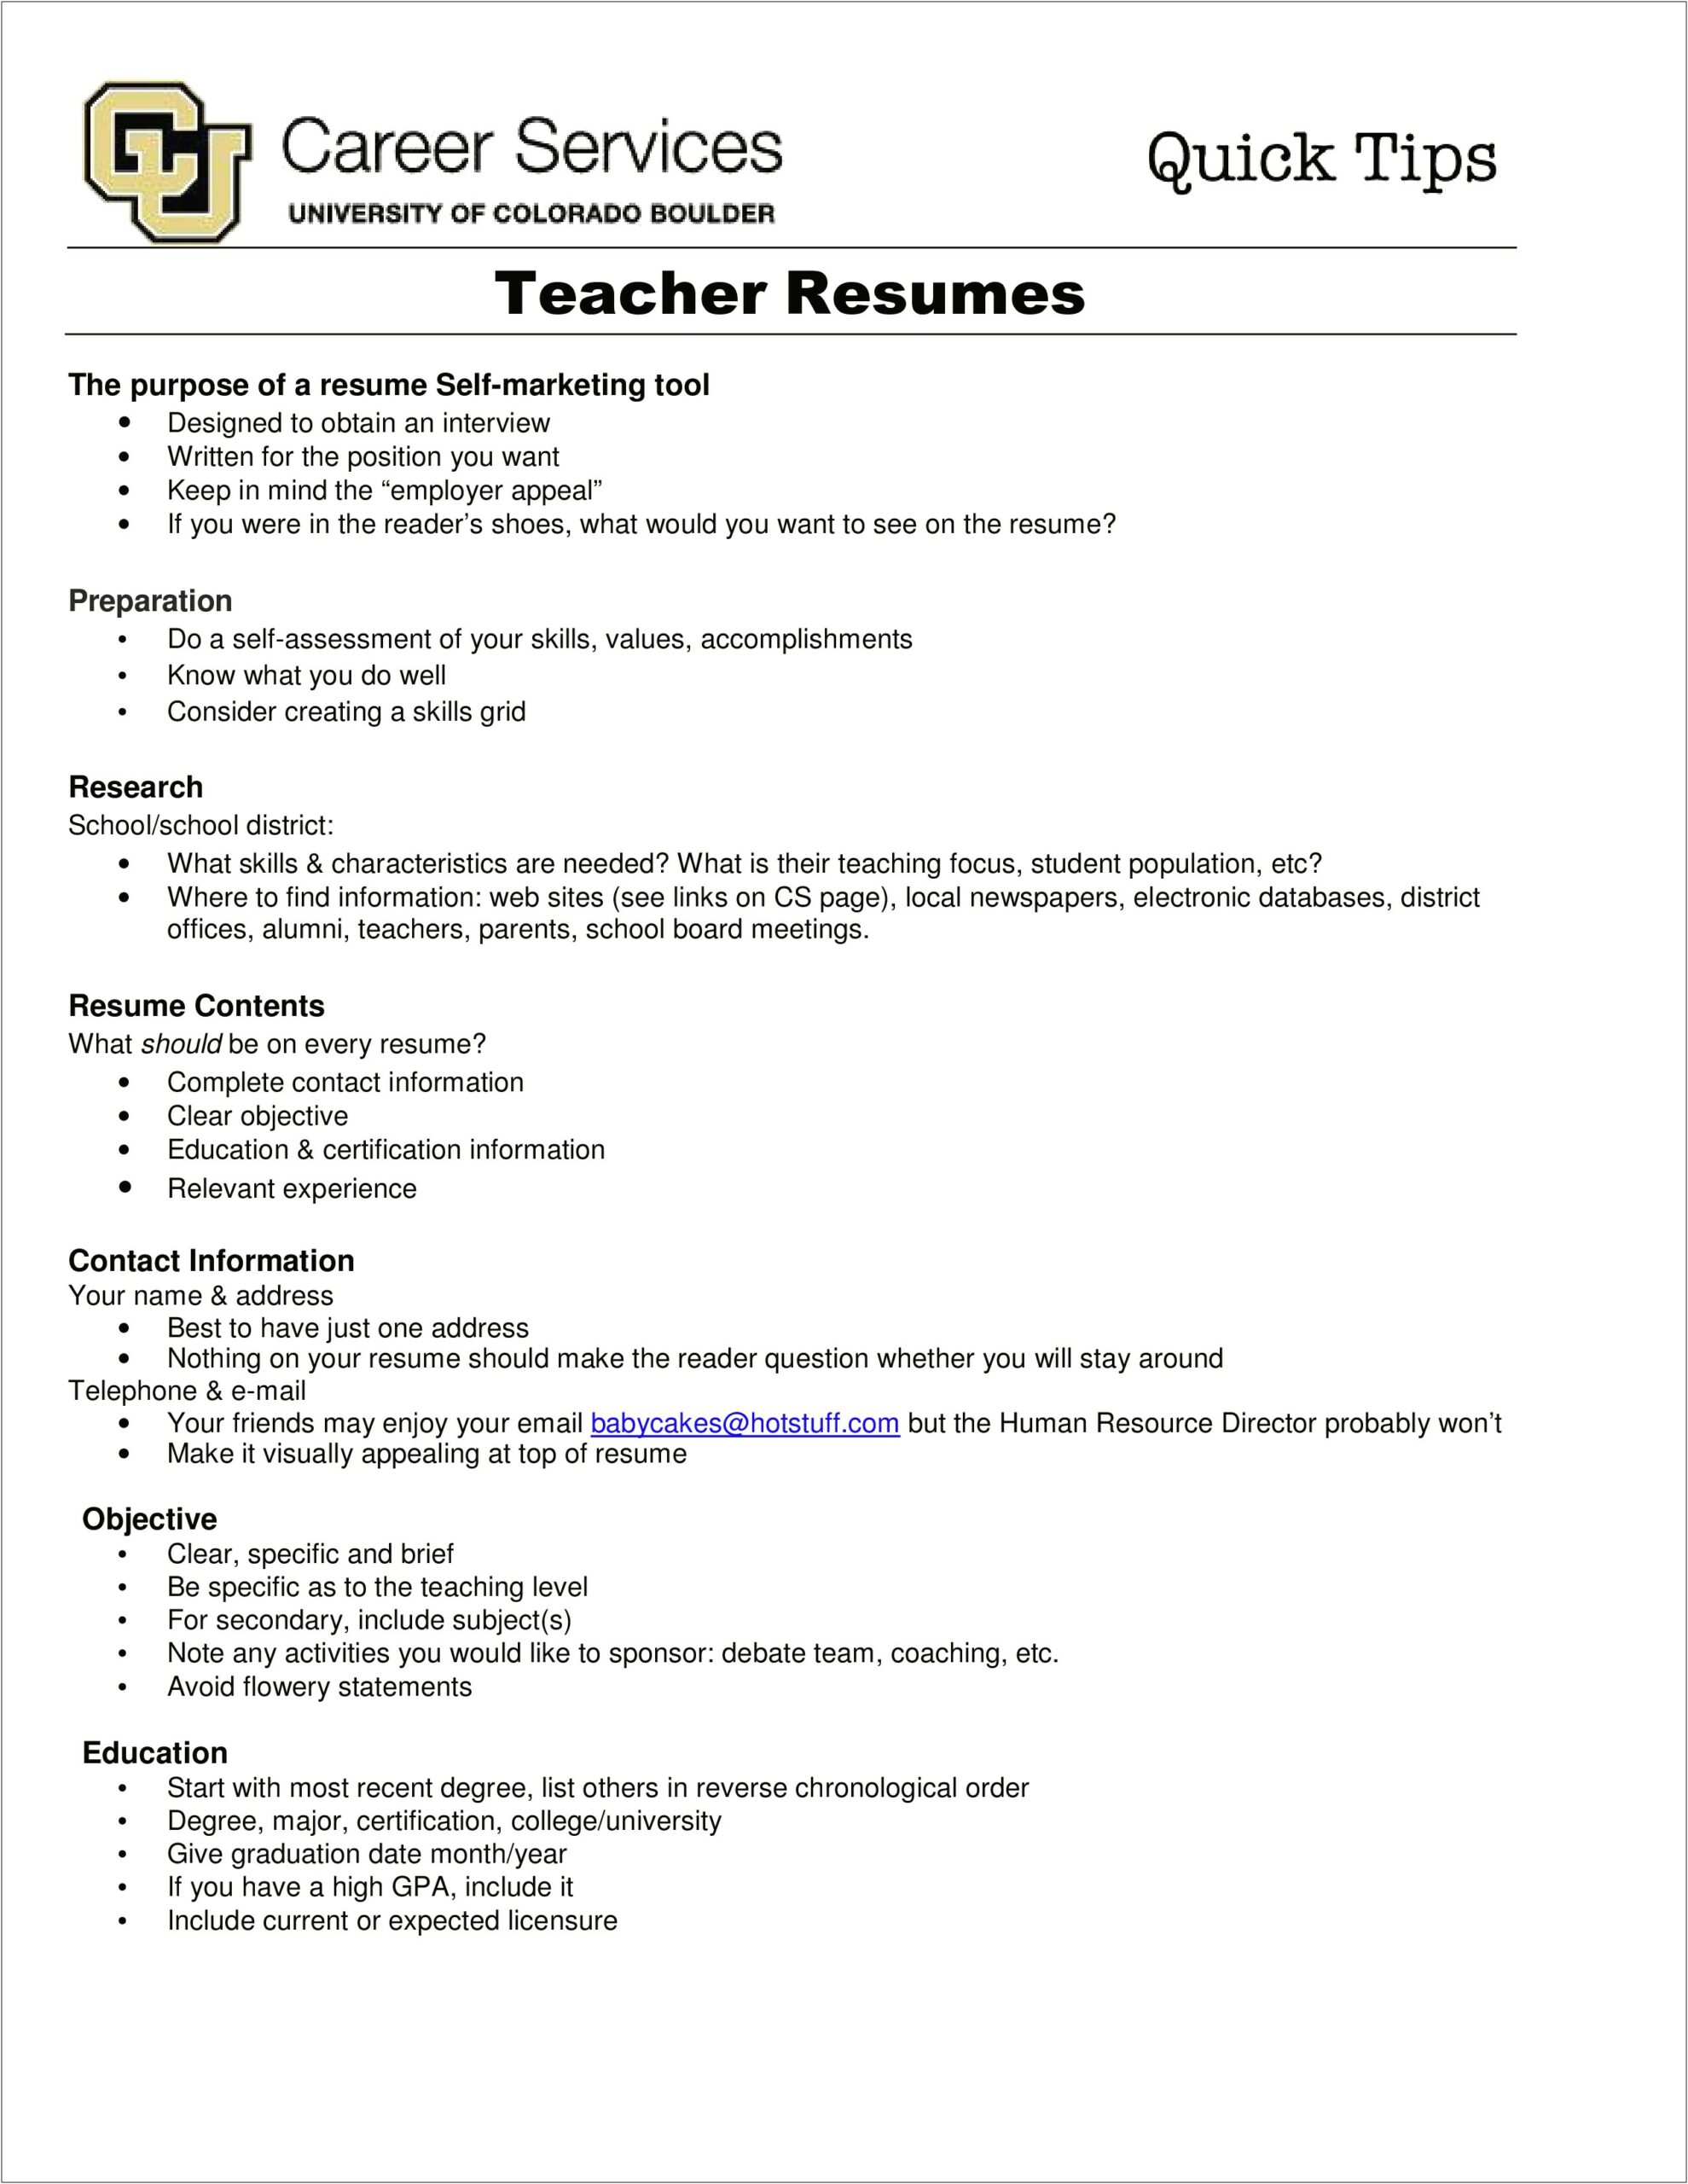 Teacher Job Skills For Resume